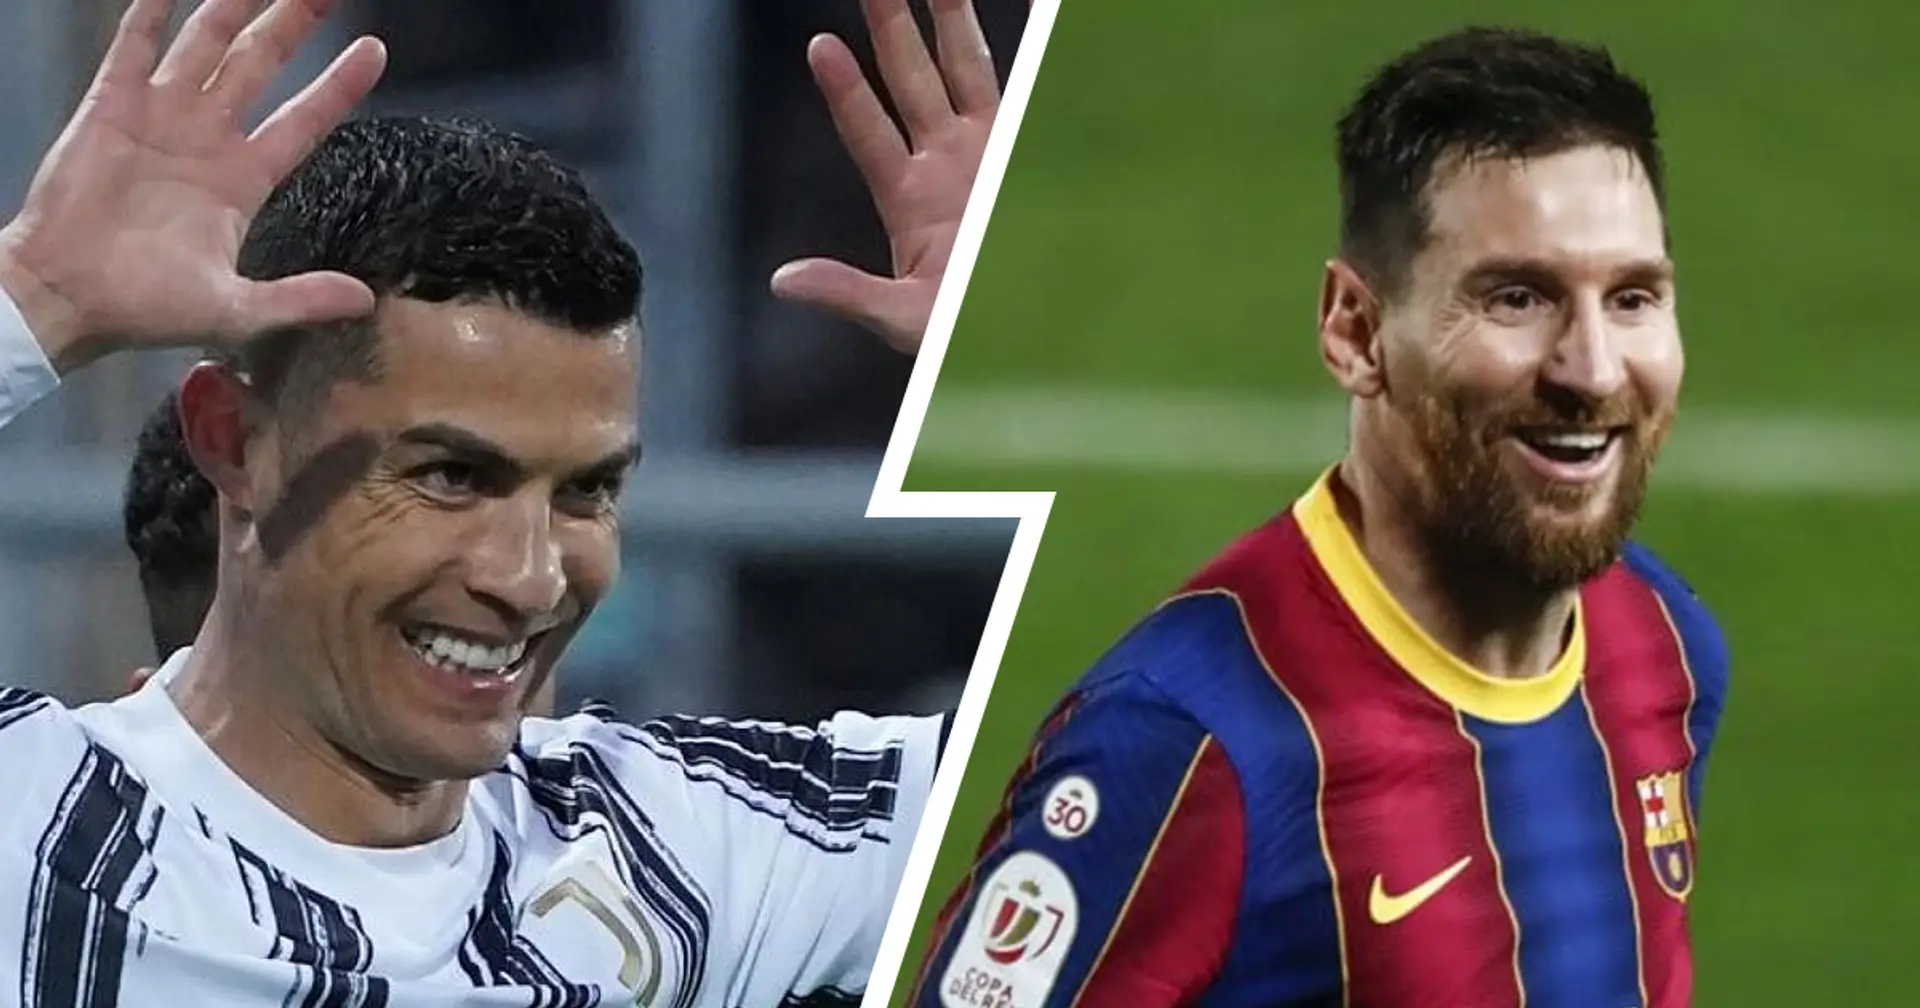 La rivalidad del futuro de LaLiga también puede ser Cristiano Ronaldo vs Messi